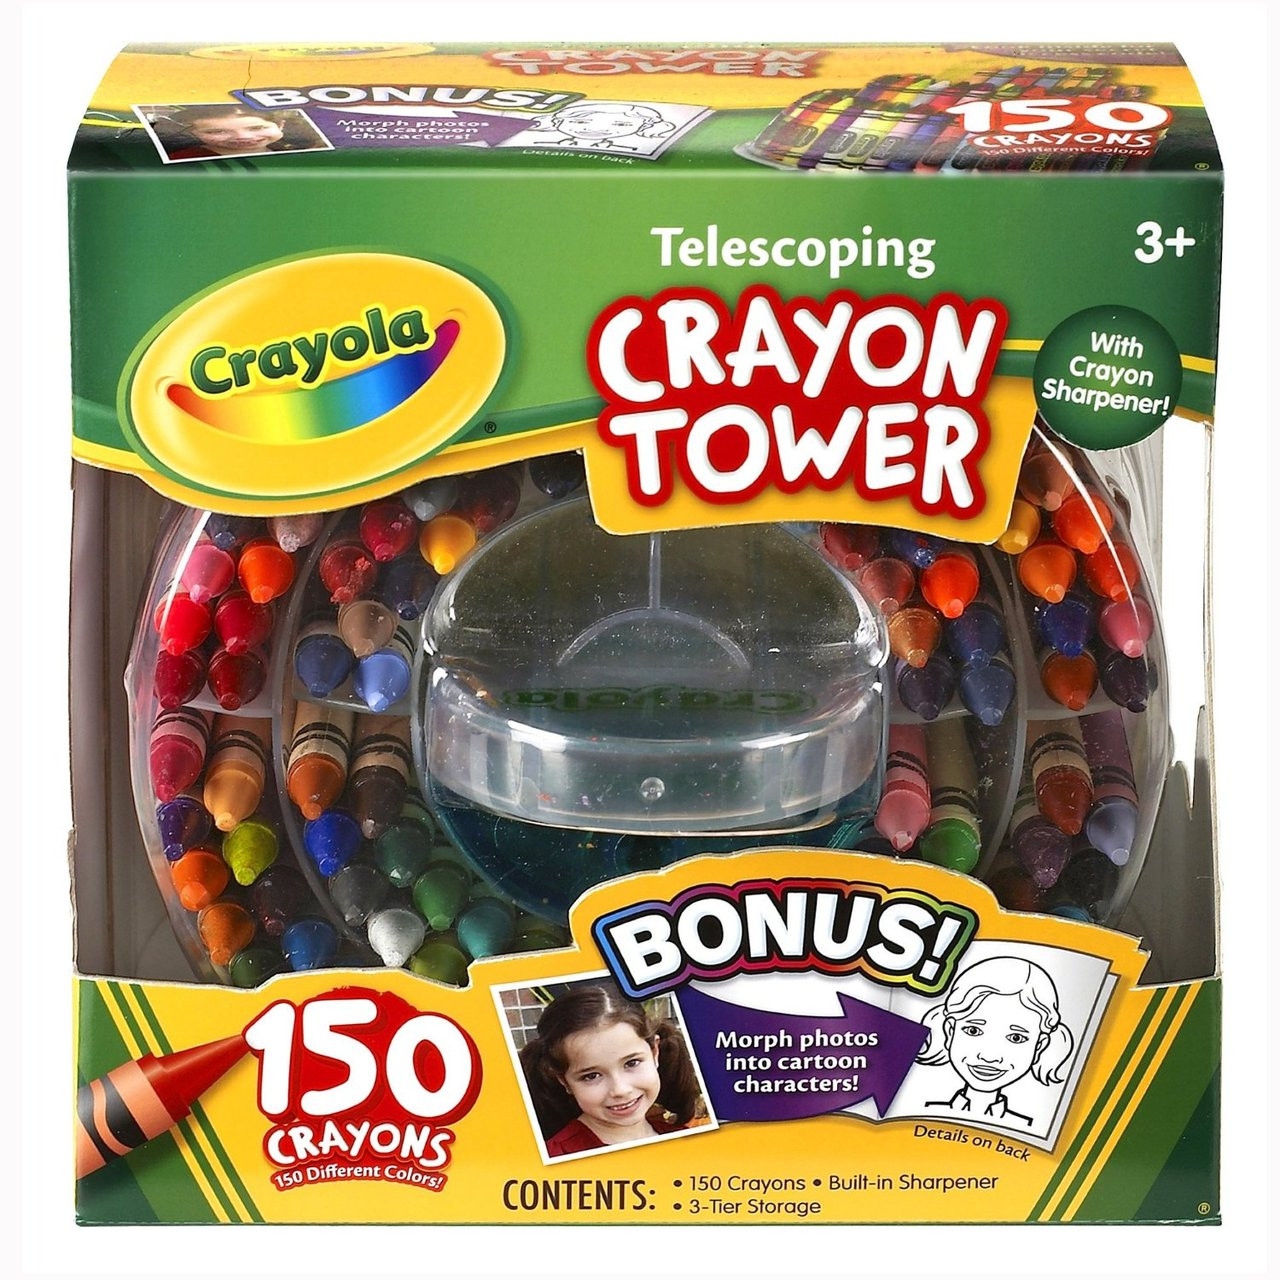 Crayola 150-Count Telescoping Crayon Tower, Storage Case, Sharpener